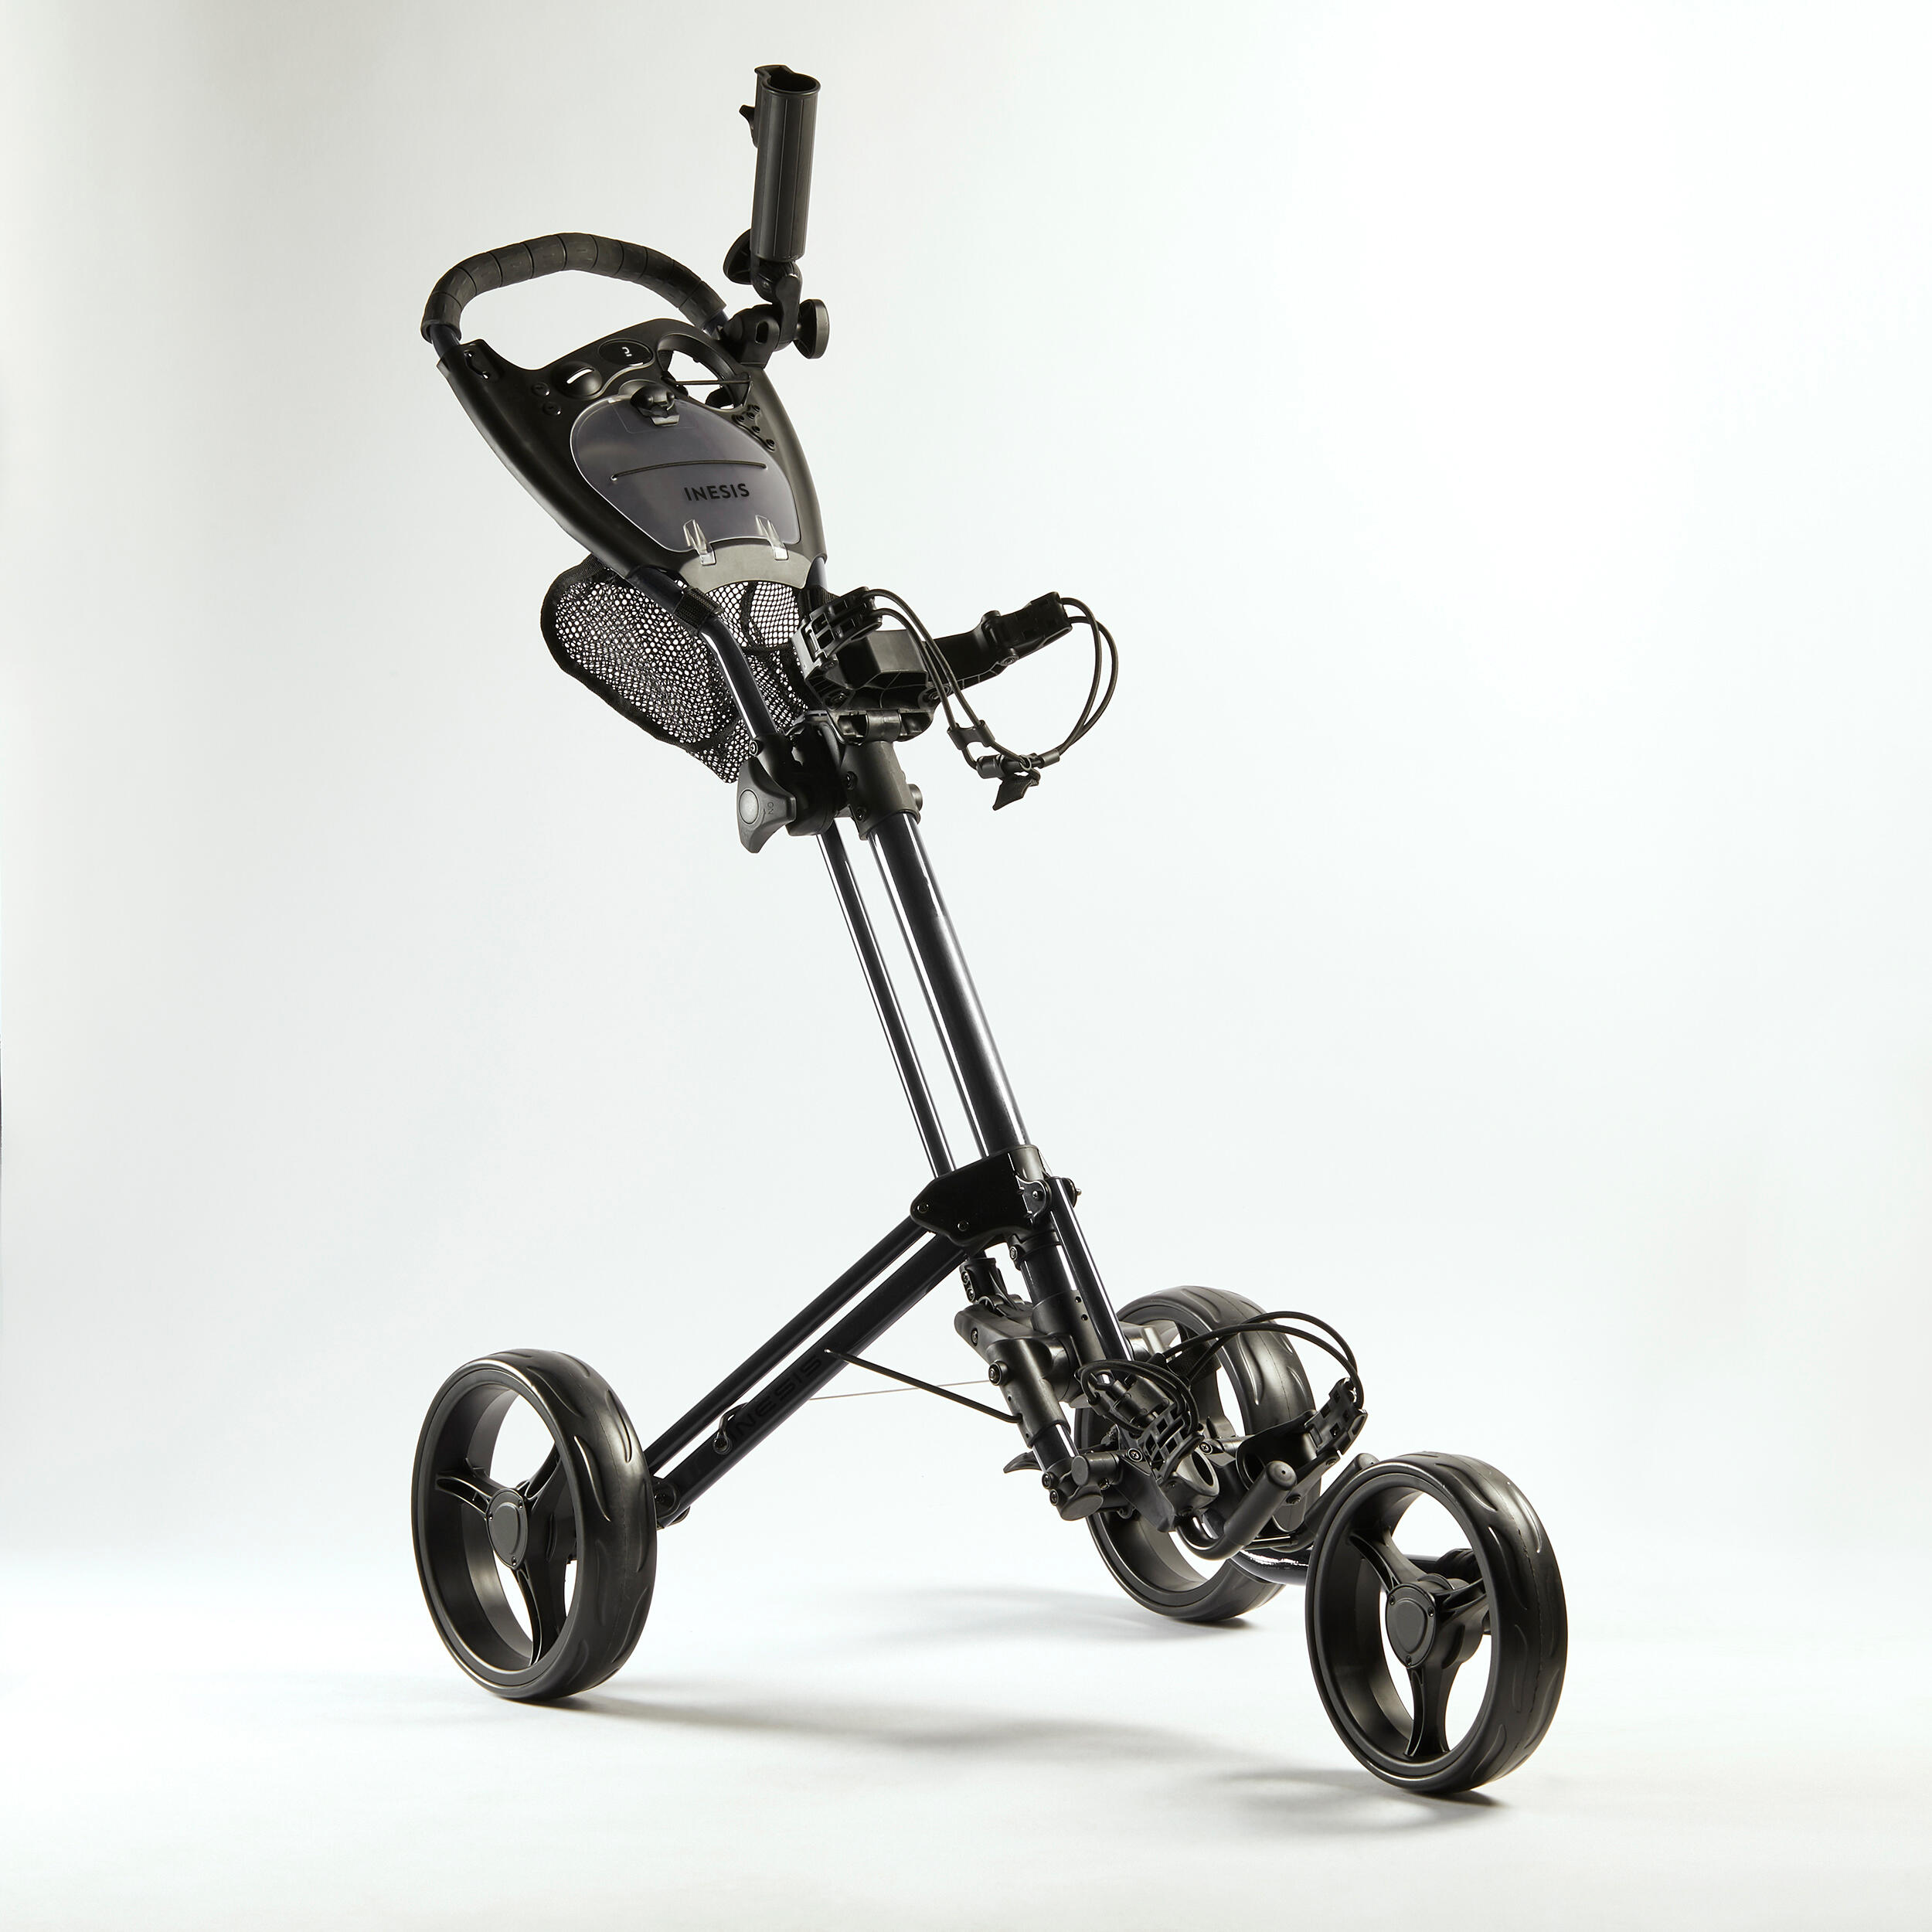 3-Wheel Compact Golf Trolley - Inesis 900 Black - INESIS